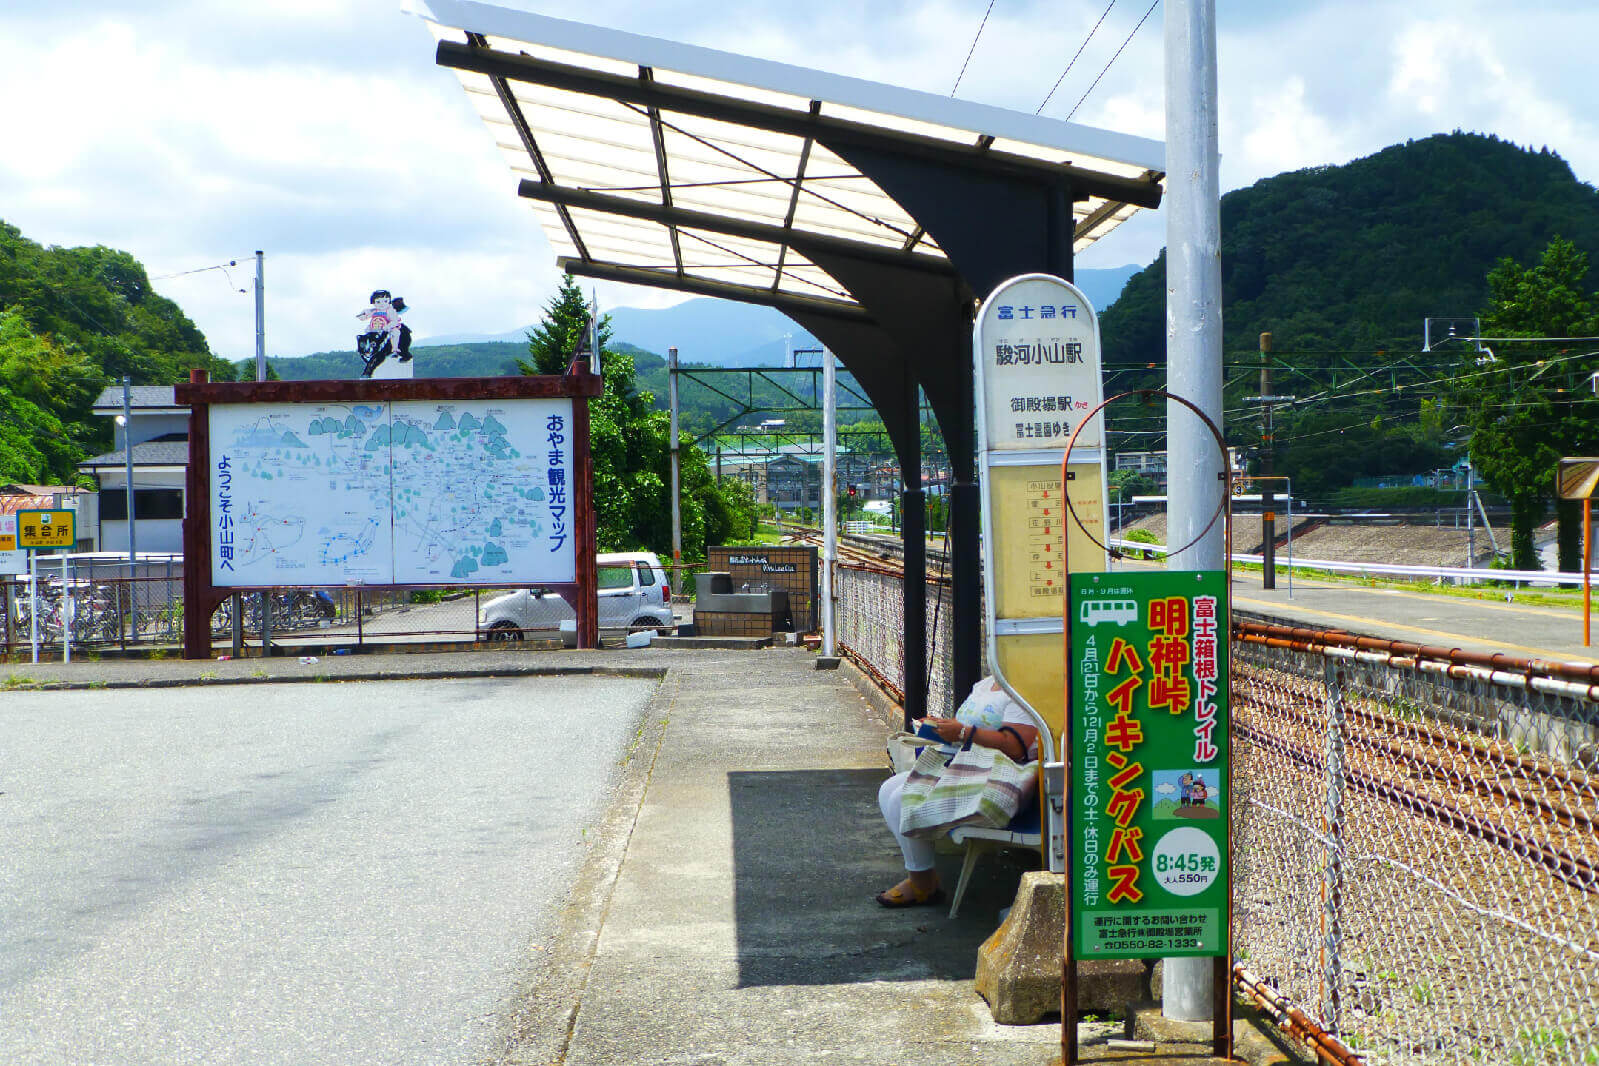 駿河小山駅 バス乗り場は、正面の分かり易い位置にあります